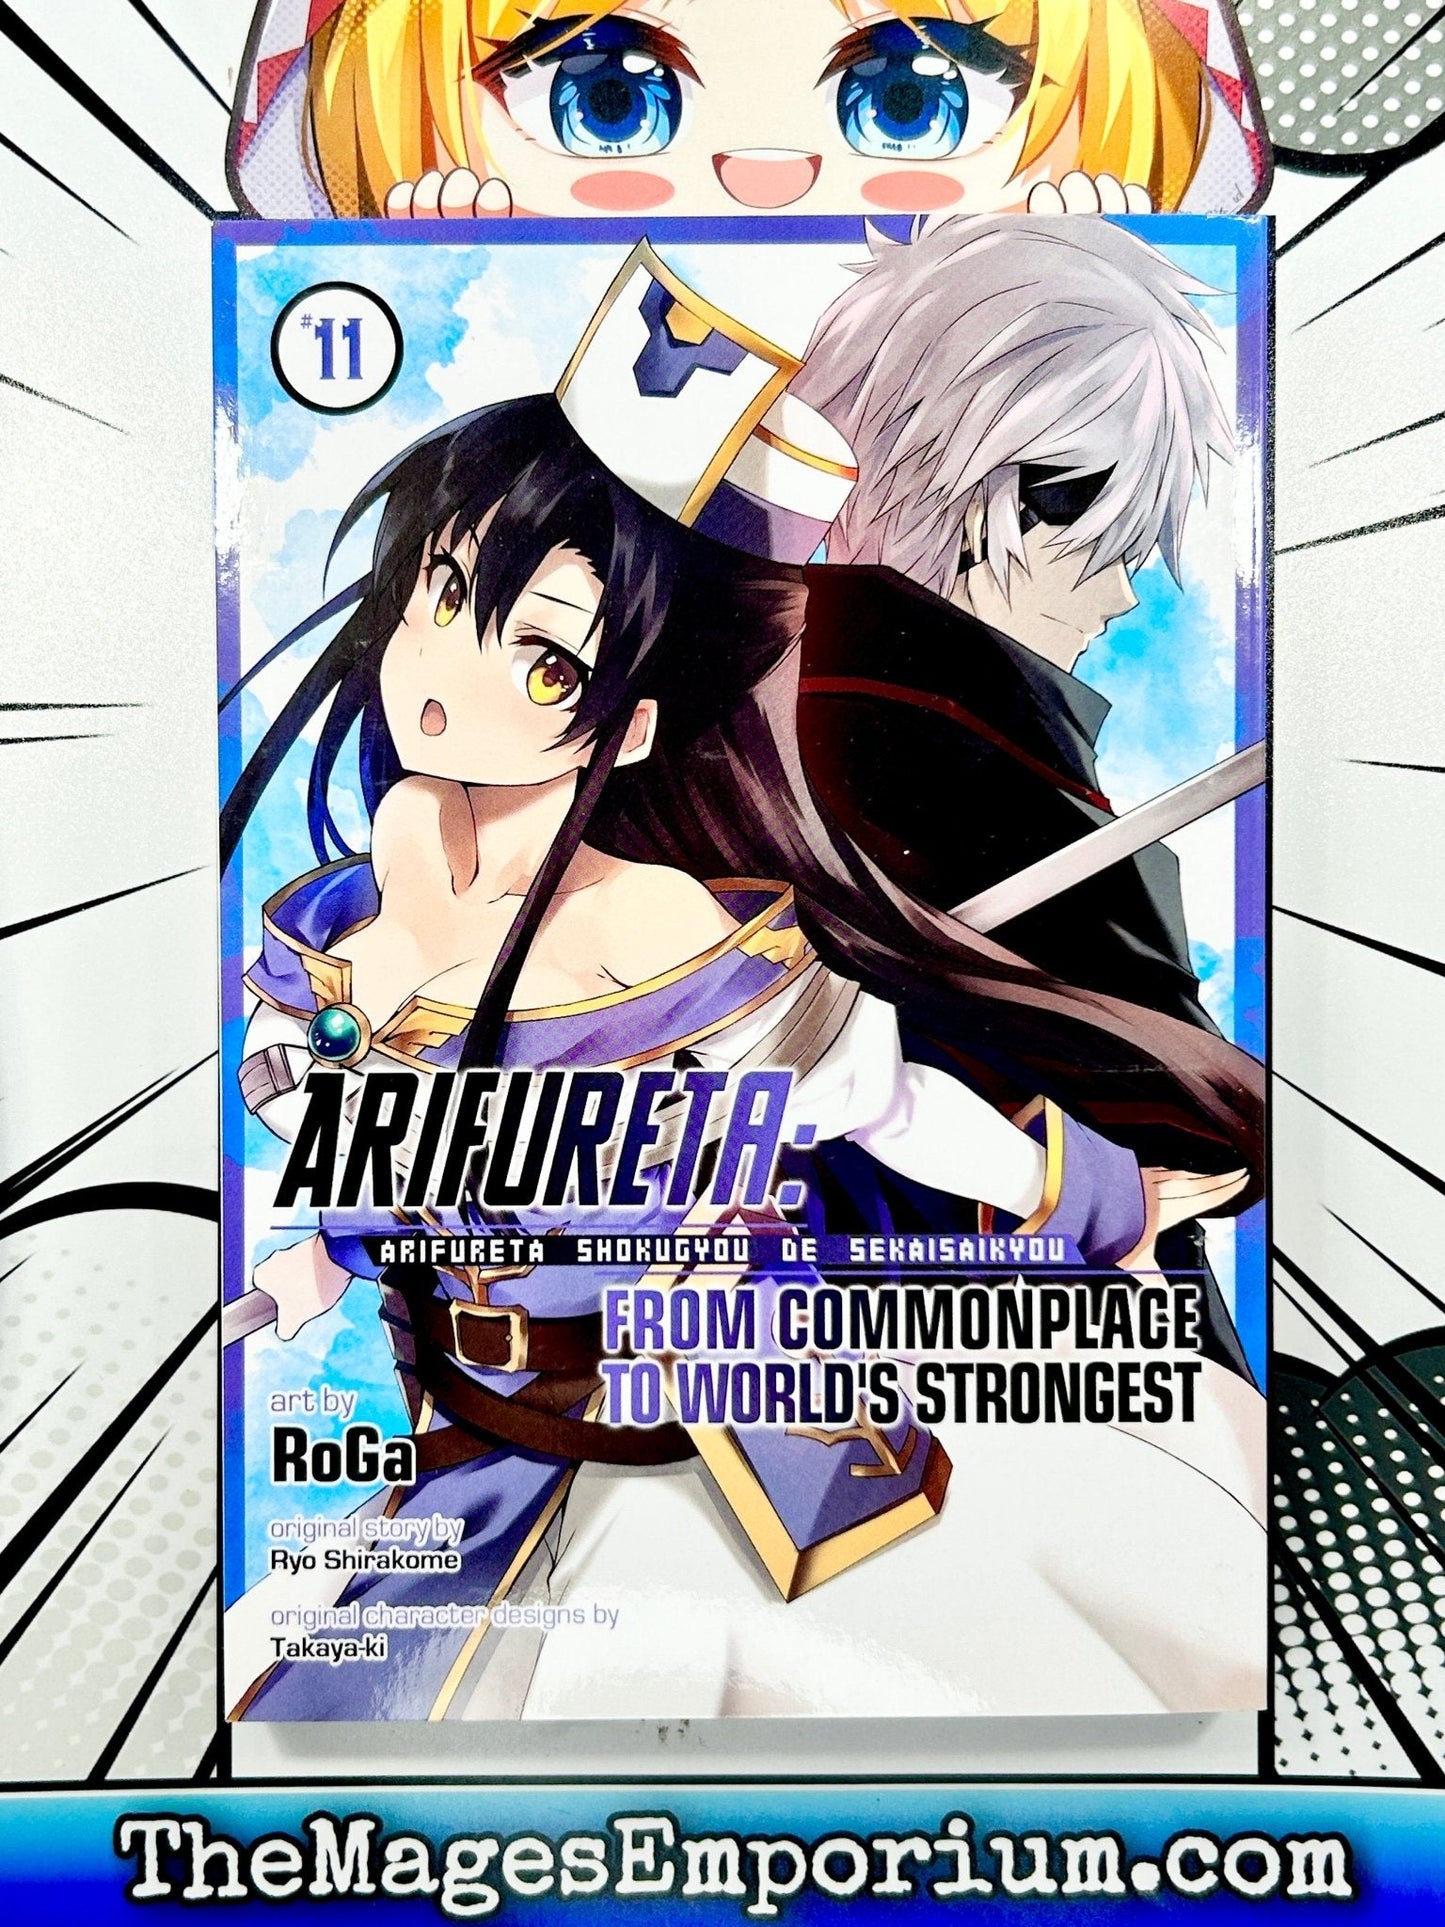 Arifureta: From Commonplace to World's Strongest Vol 11 Manga